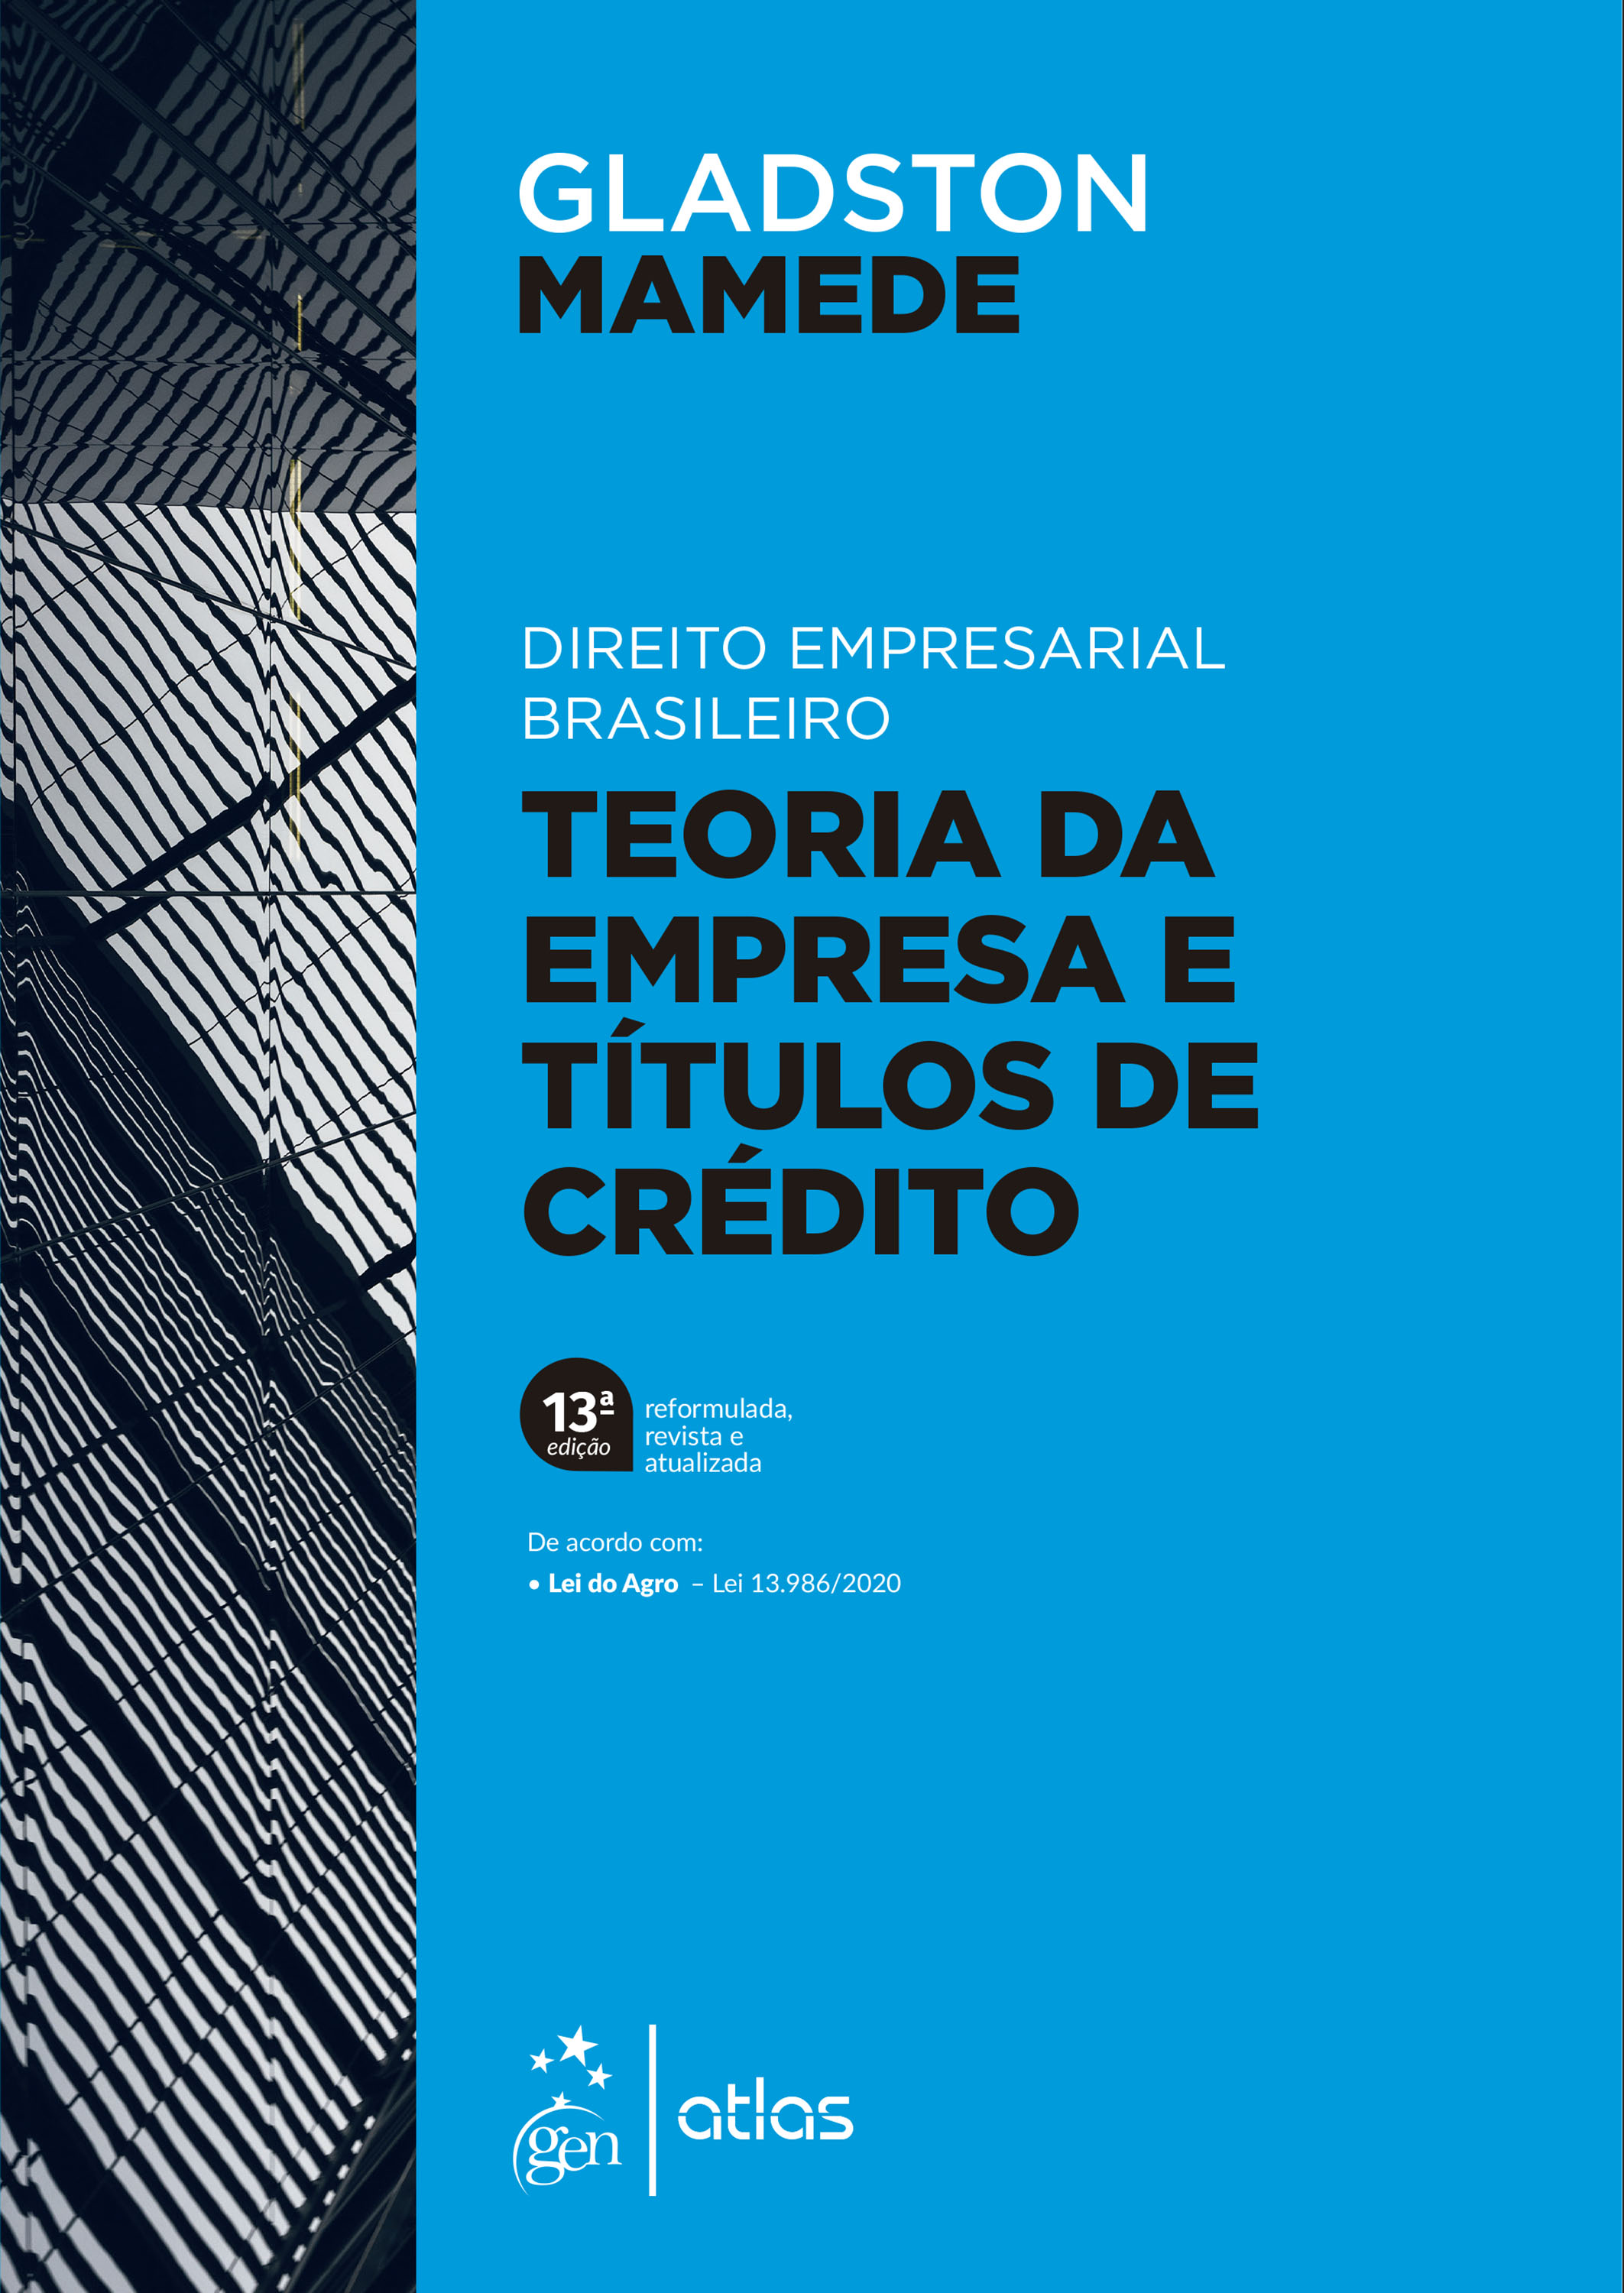 Direito Empresarial Brasileiro - Teoria Geral da Empresa e Títulos de Crédito - 13Ed/21